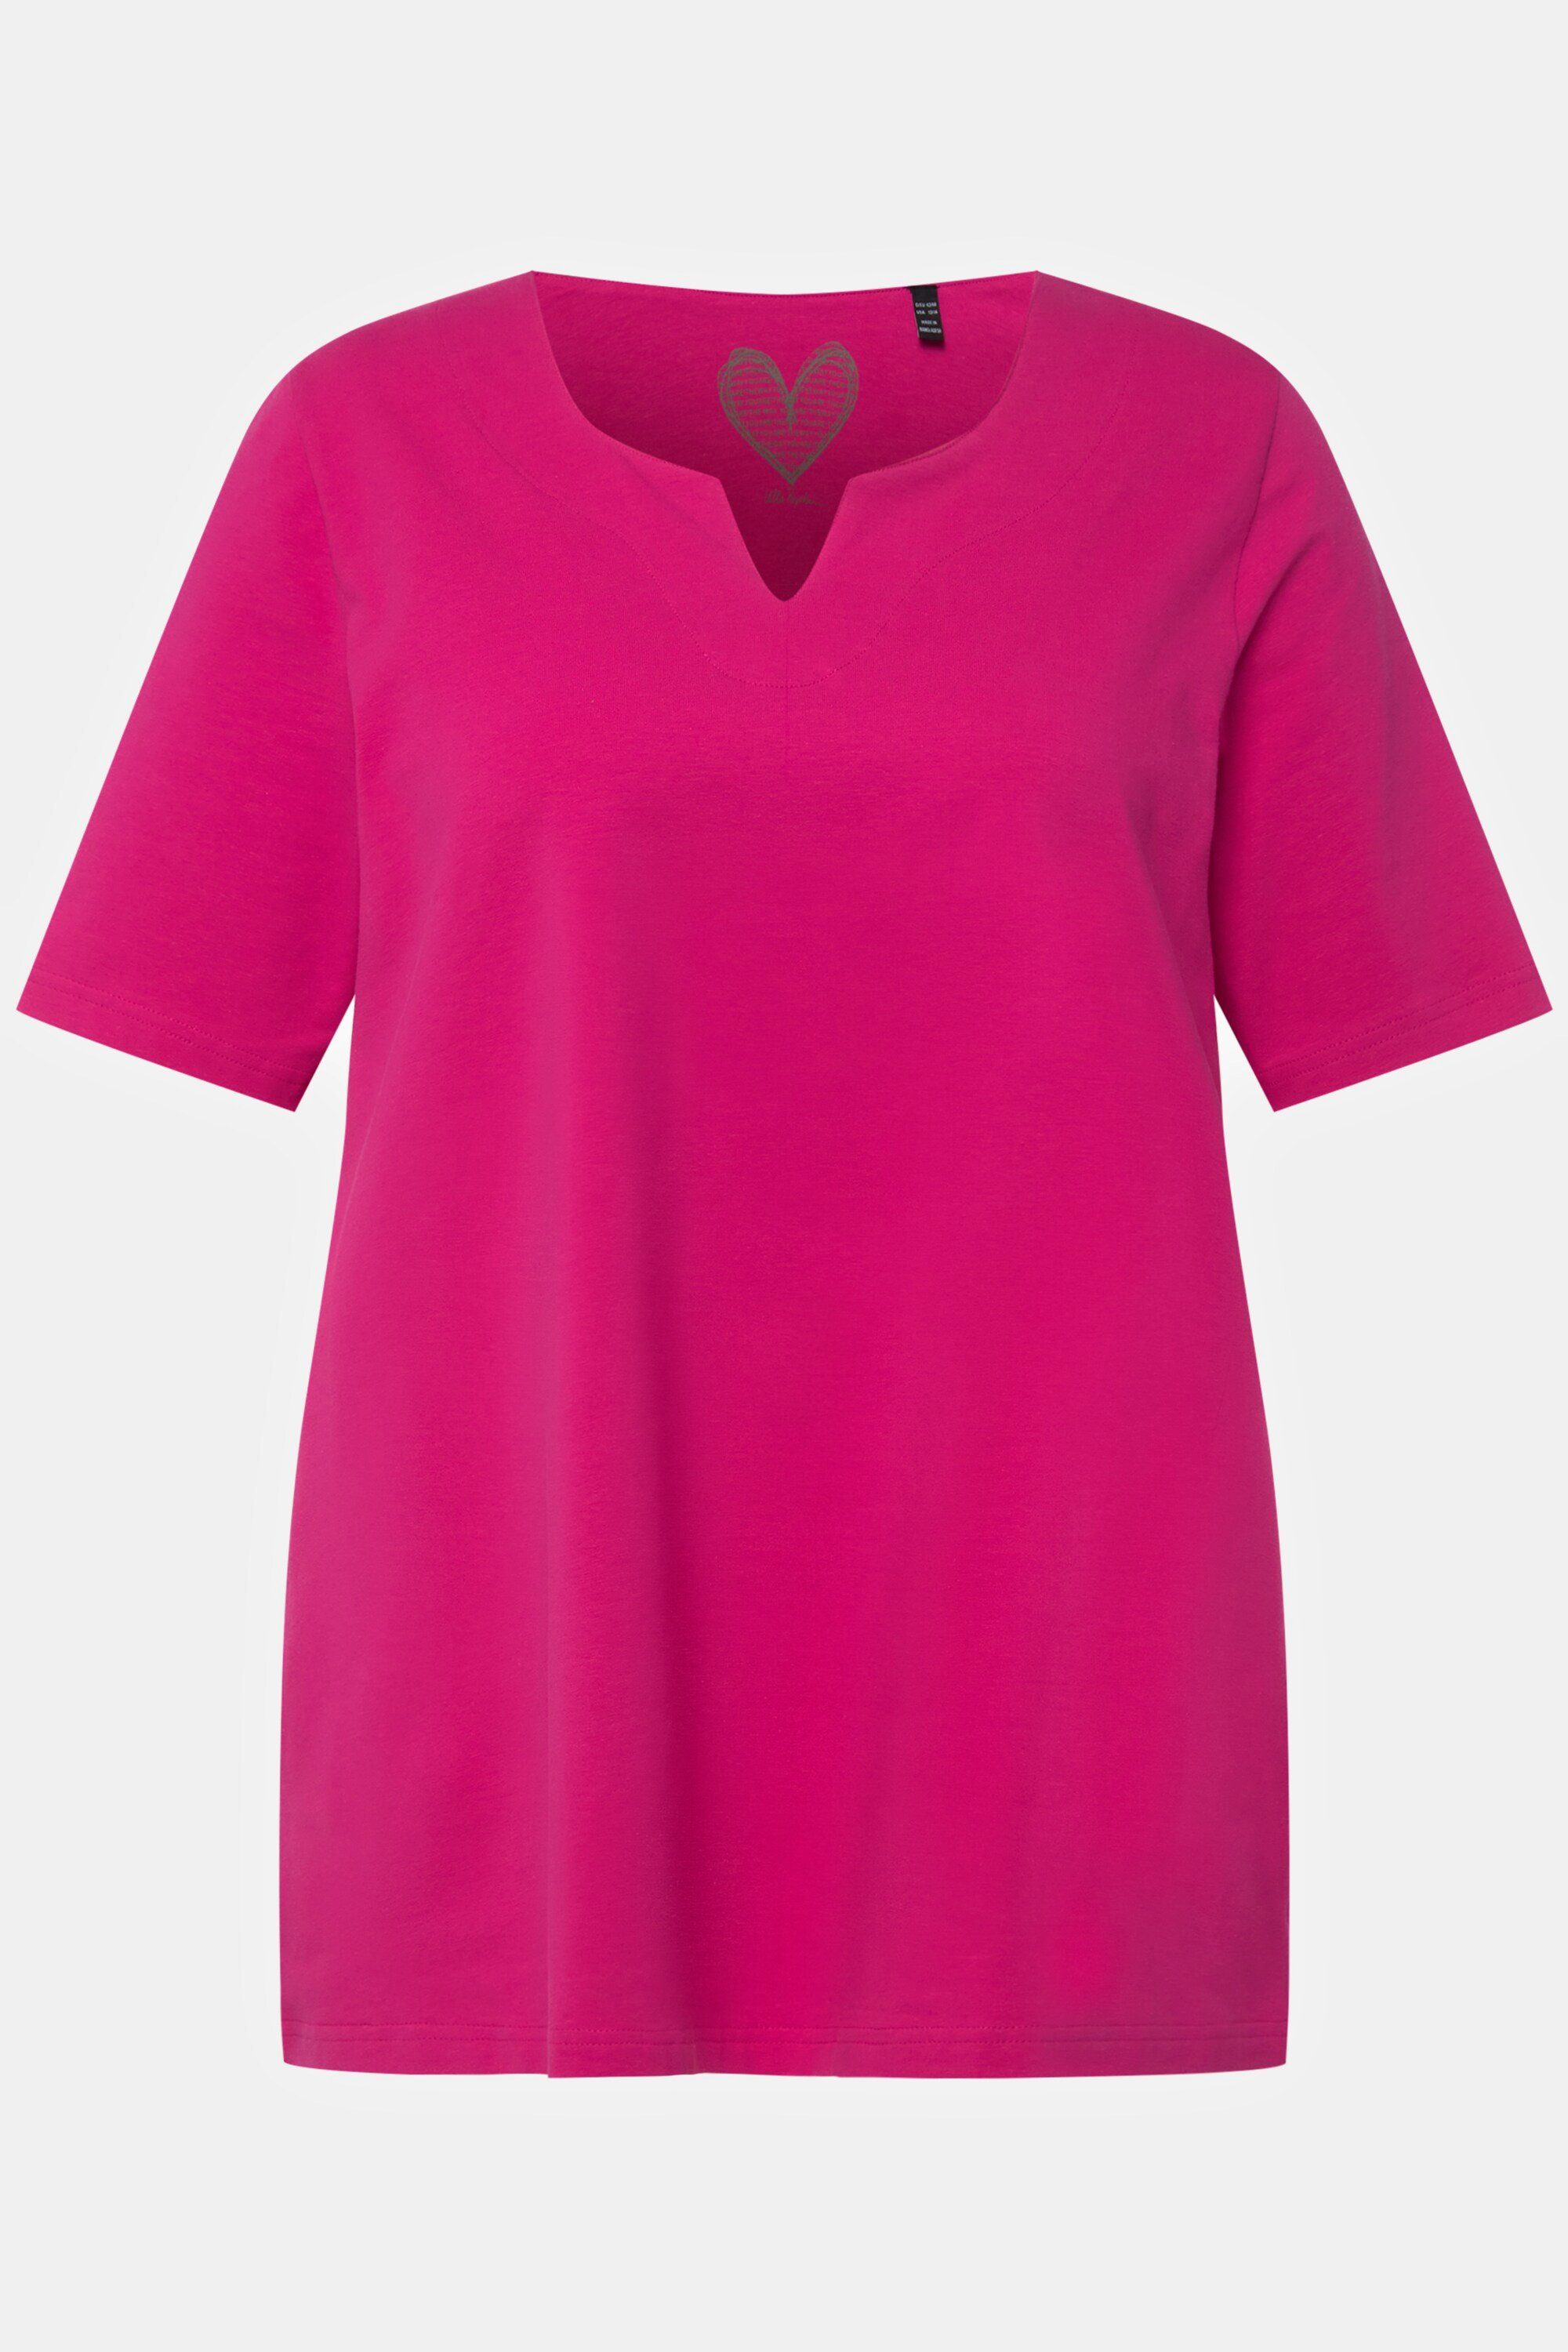 Ulla Popken Rundhalsshirt fuchsia pink Tunika-Ausschnitt T-Shirt A-Linie Halbarm